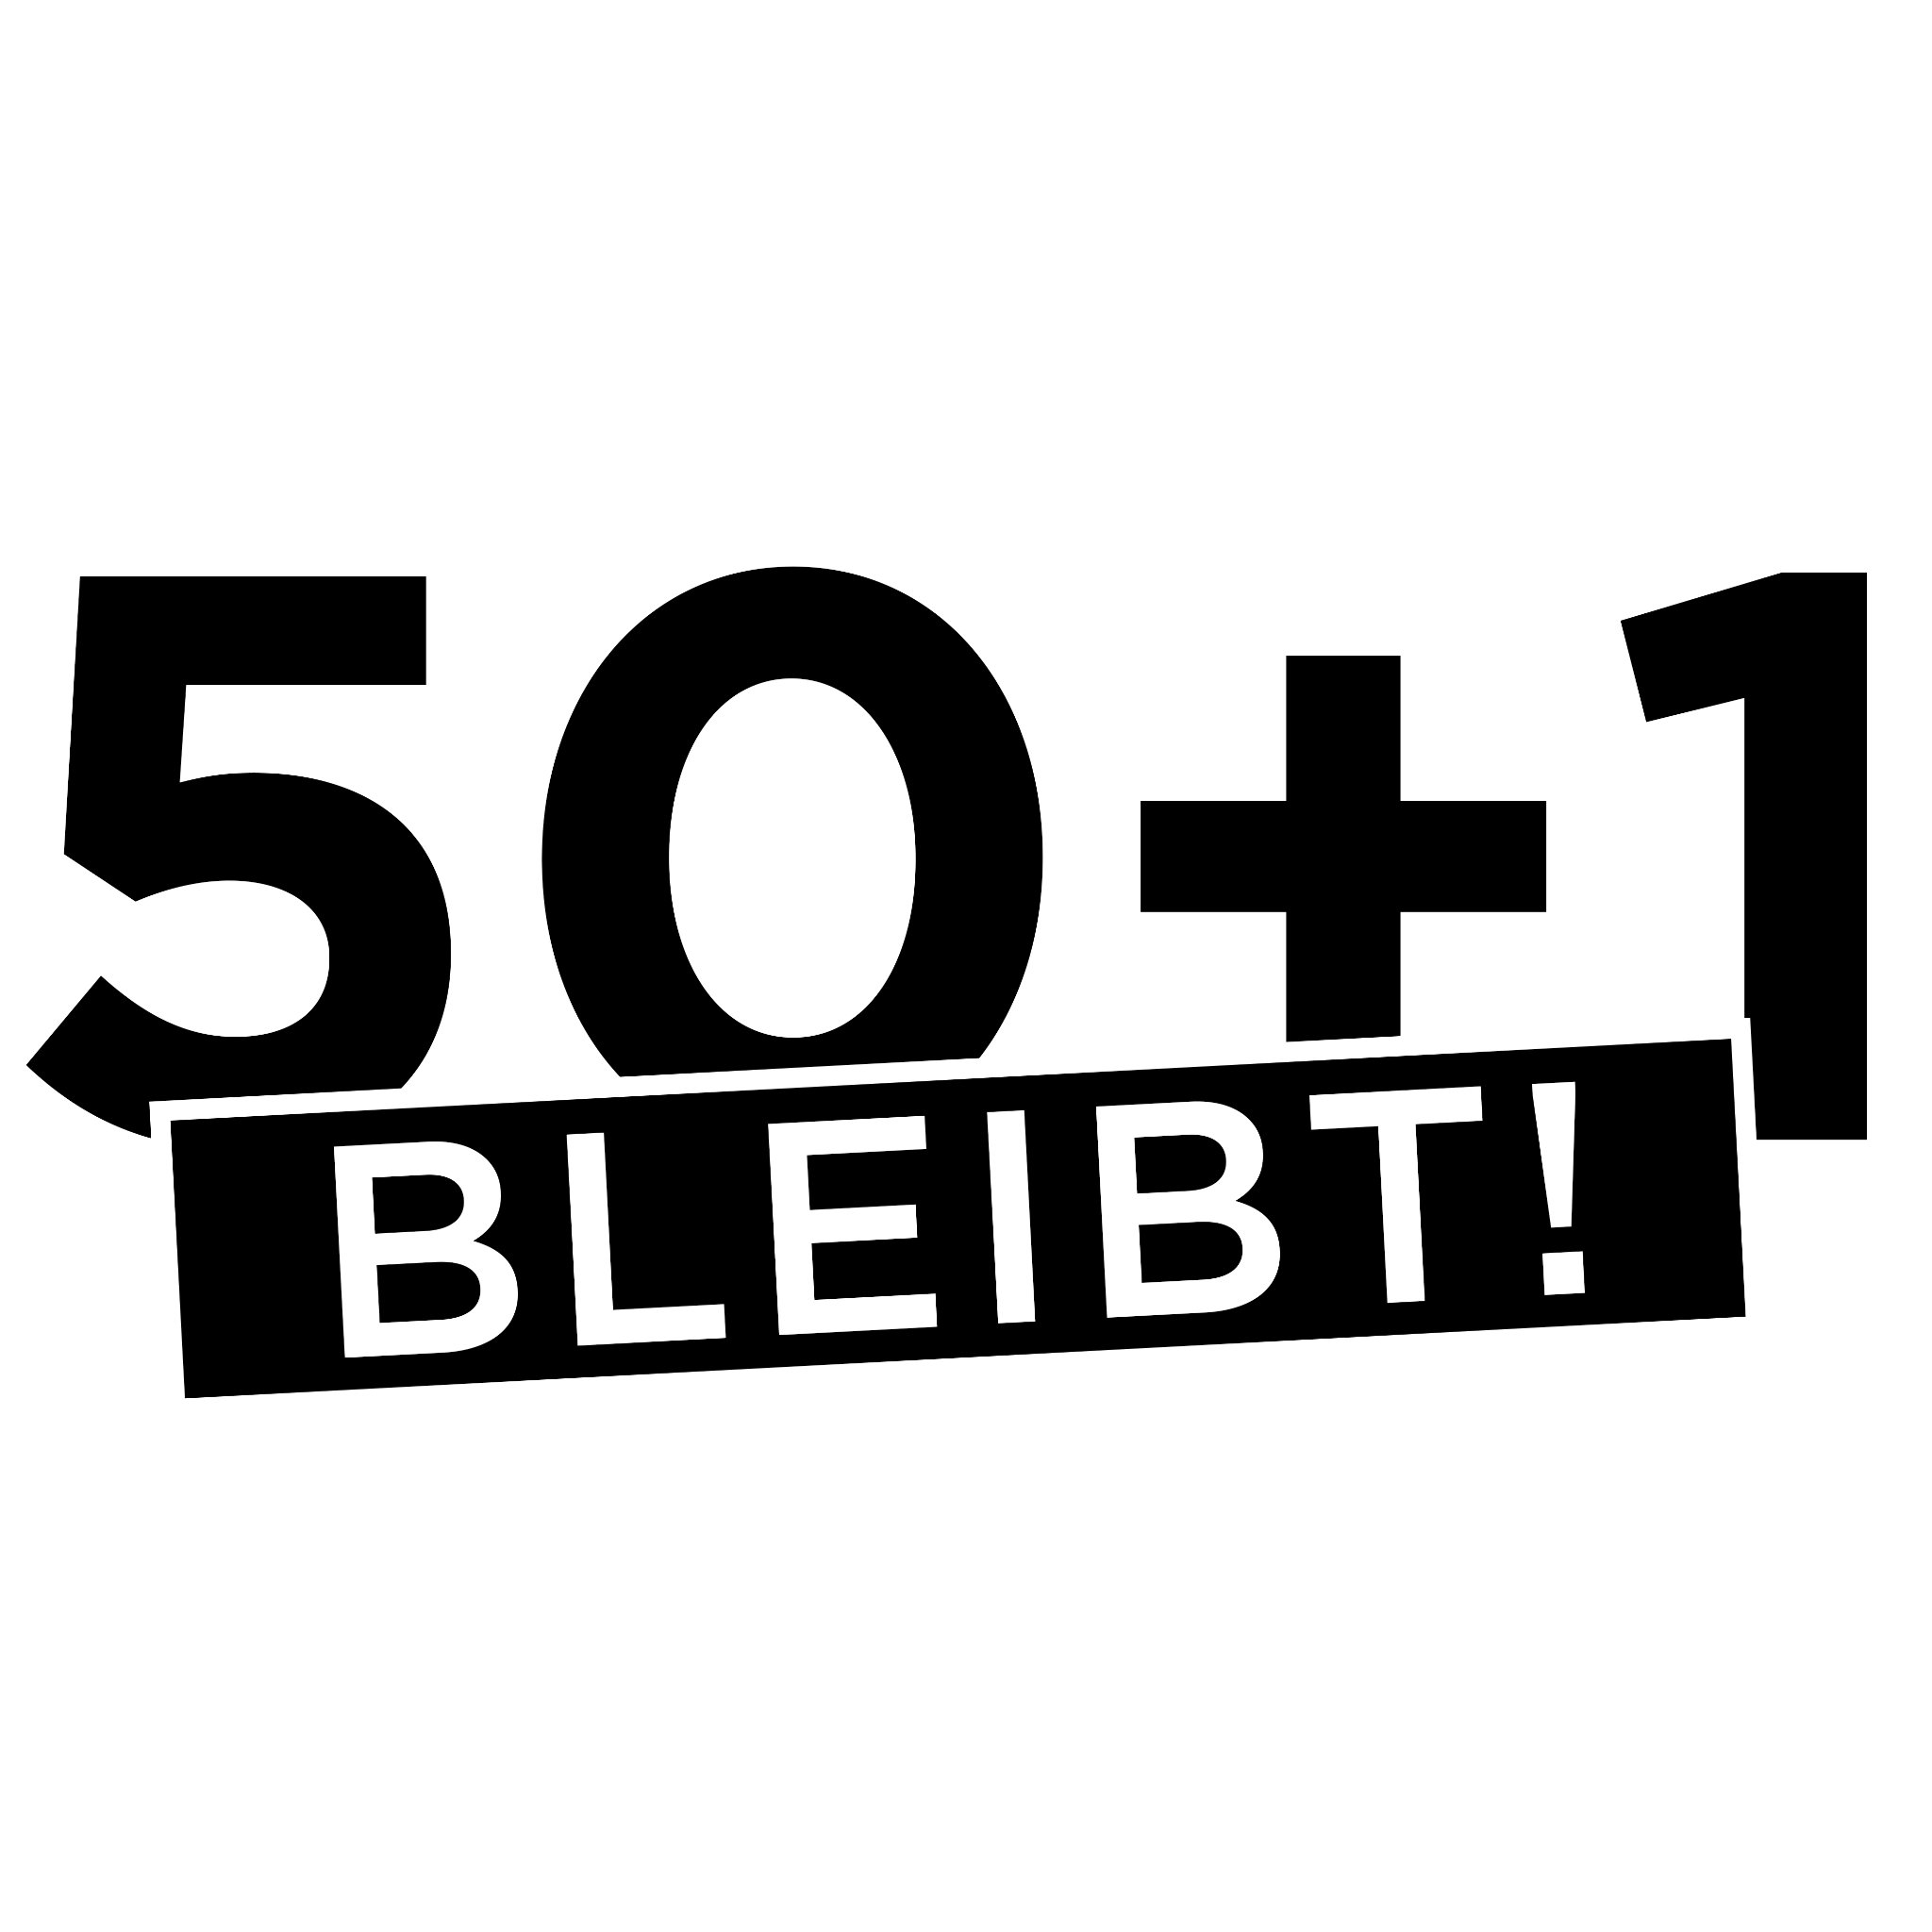 Wir, Fanclubs, -Gruppierungen und -Verbände aus ganz Deutschland, beziehen klar Stellung für die 50+1 Regel!